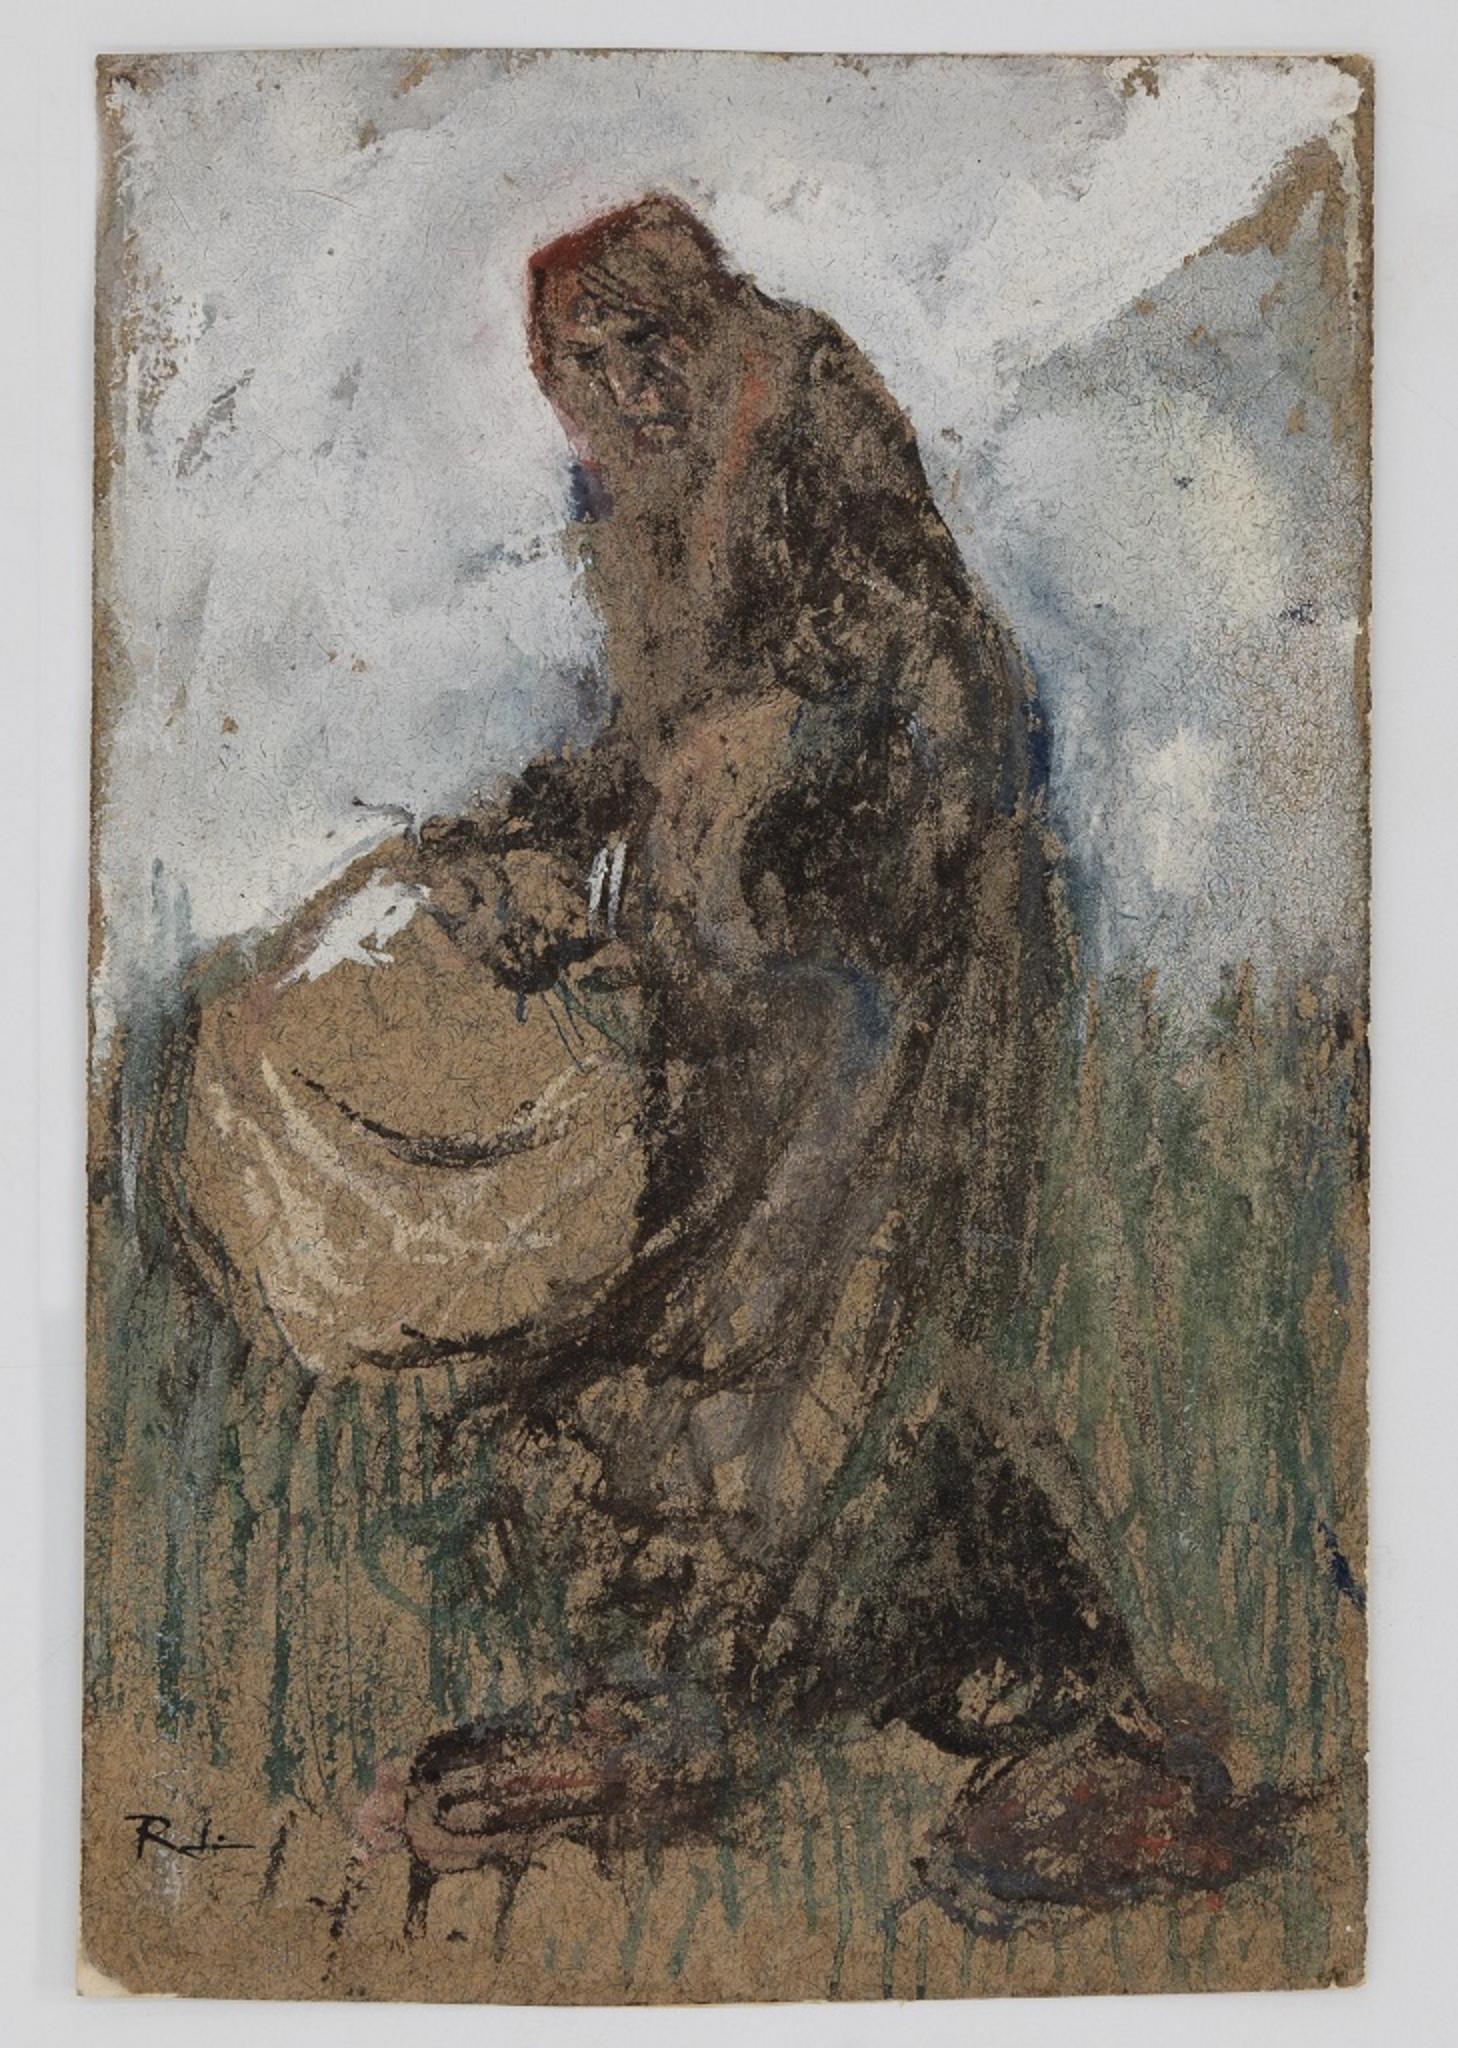 Woman with Basket - Original Ink, Tempera and Watercolor by G. Galantara - 1905